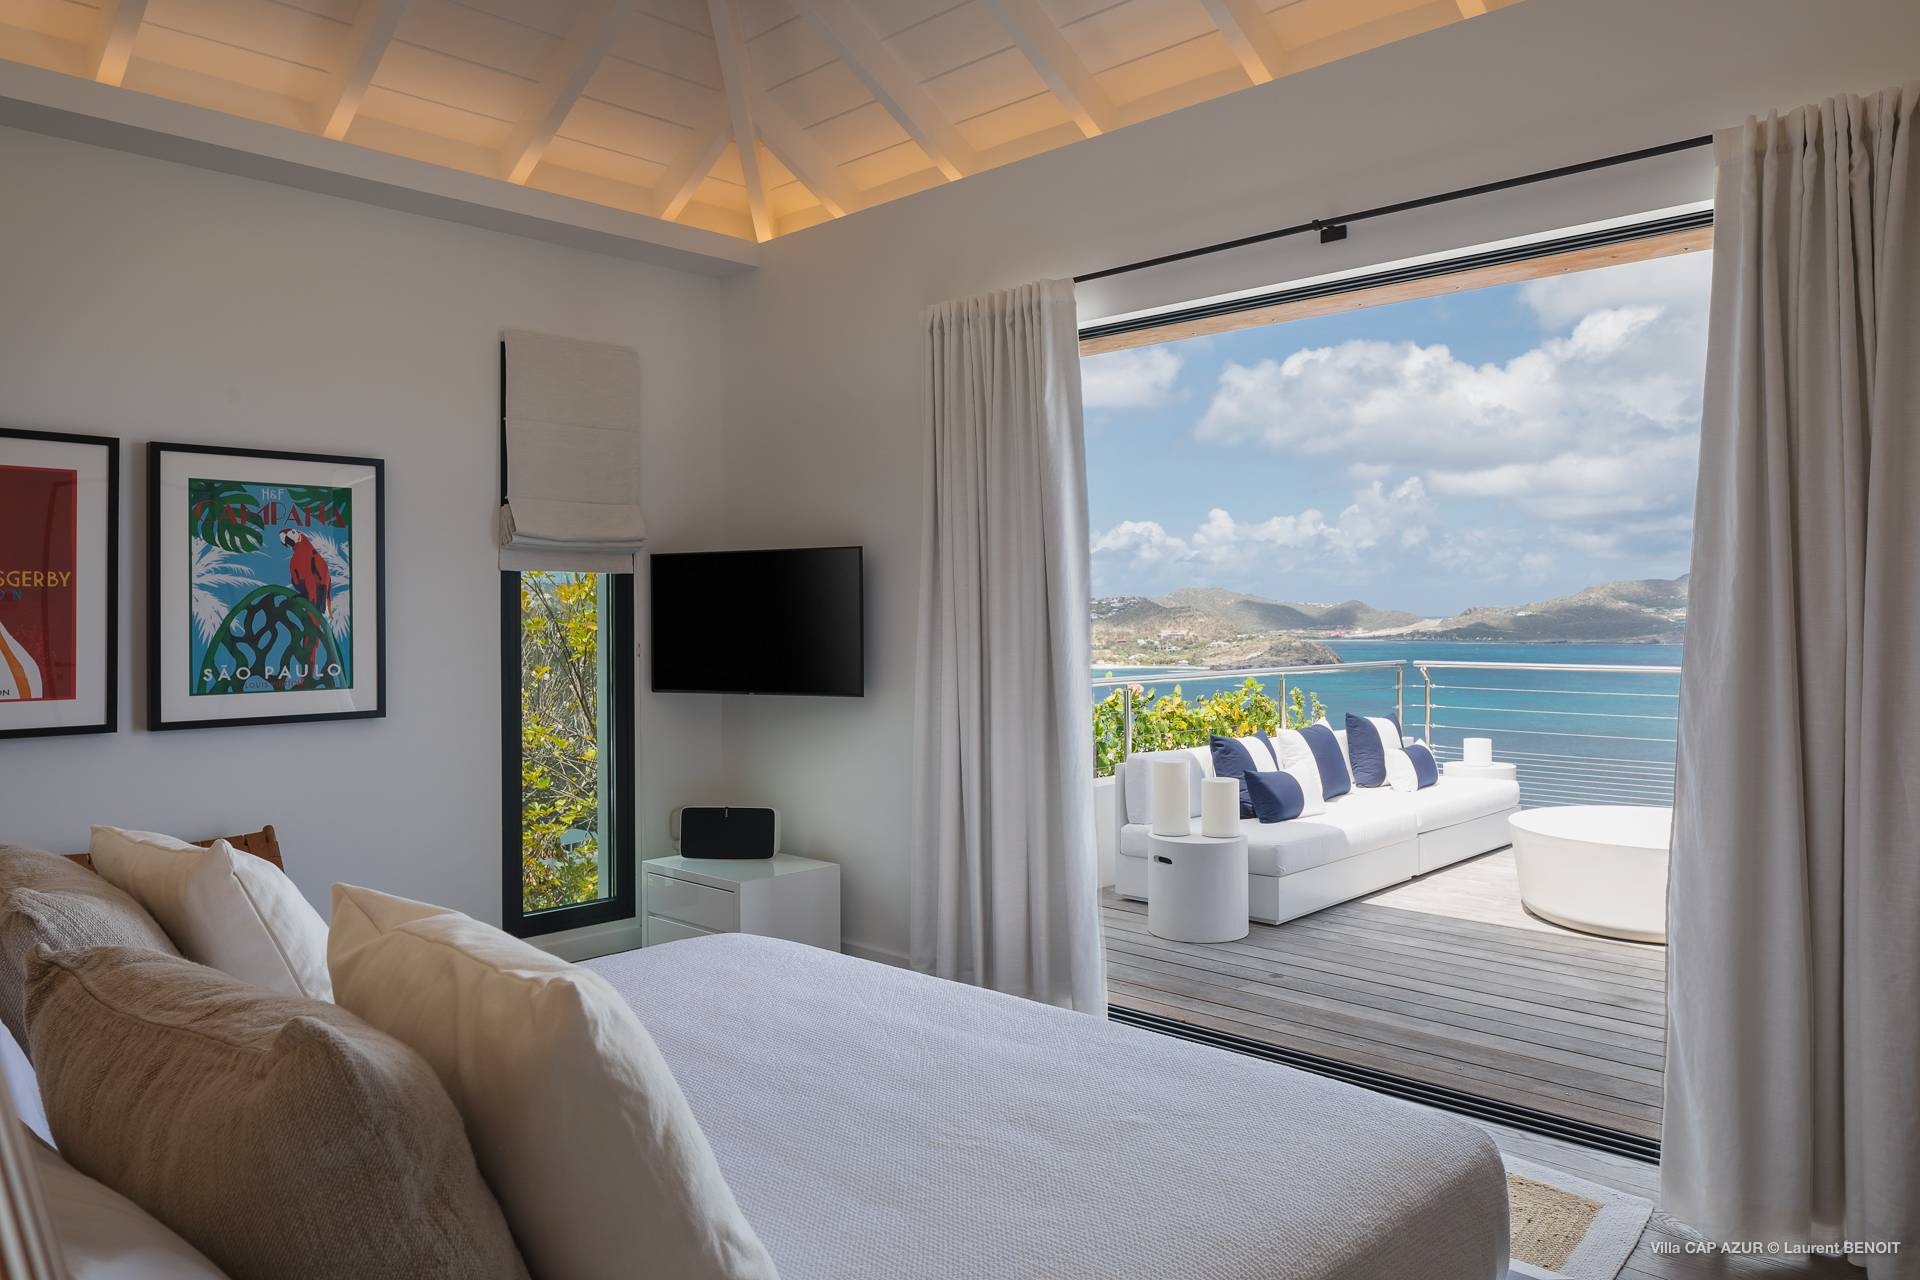 Villa Cap Azur Bedroom 2